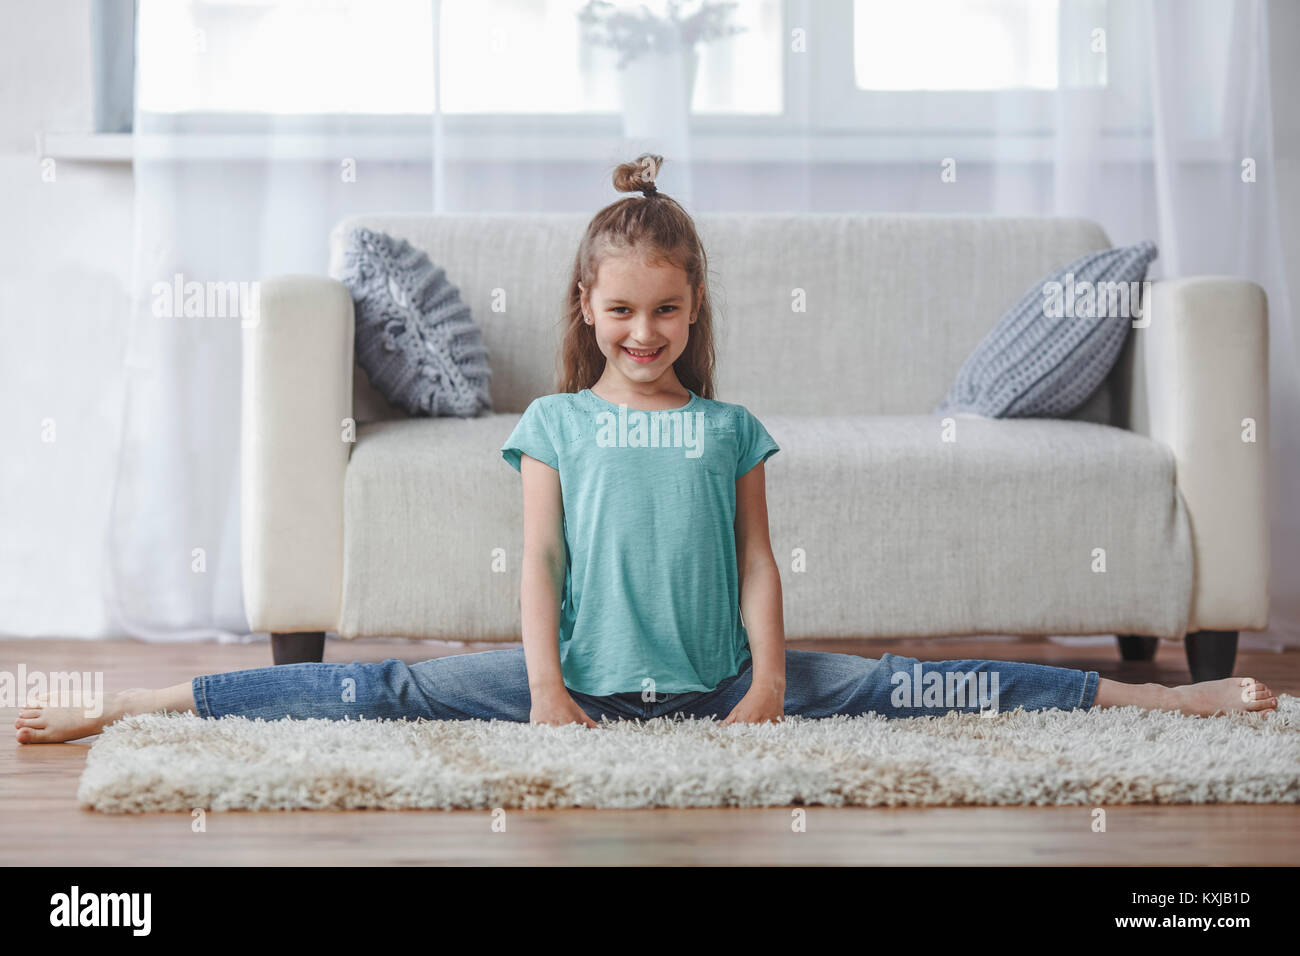 Full length portrait of smiling girl doing splits on rug in living room at home Stock Photo